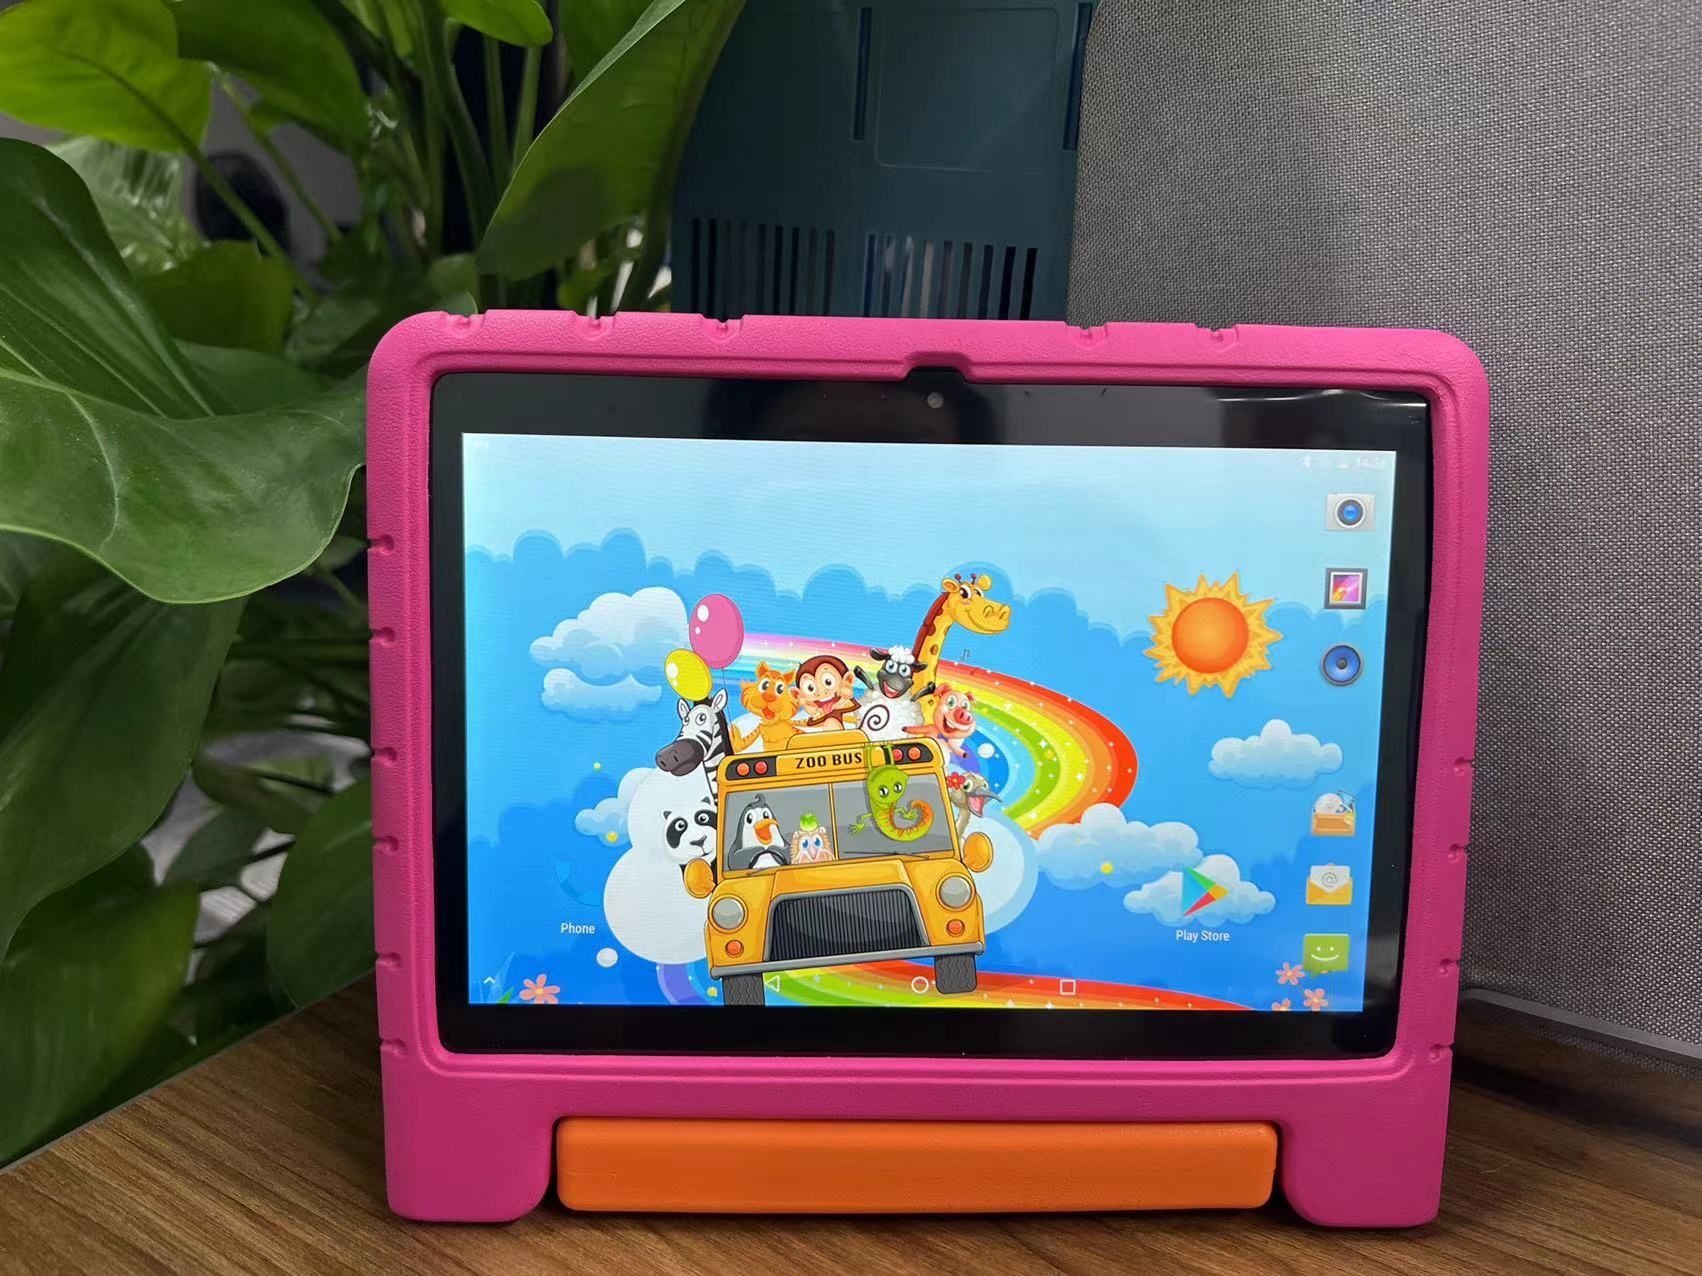 ROSE Tablette tactile Q88 7HD 8Go jouet educatif cadeau pour